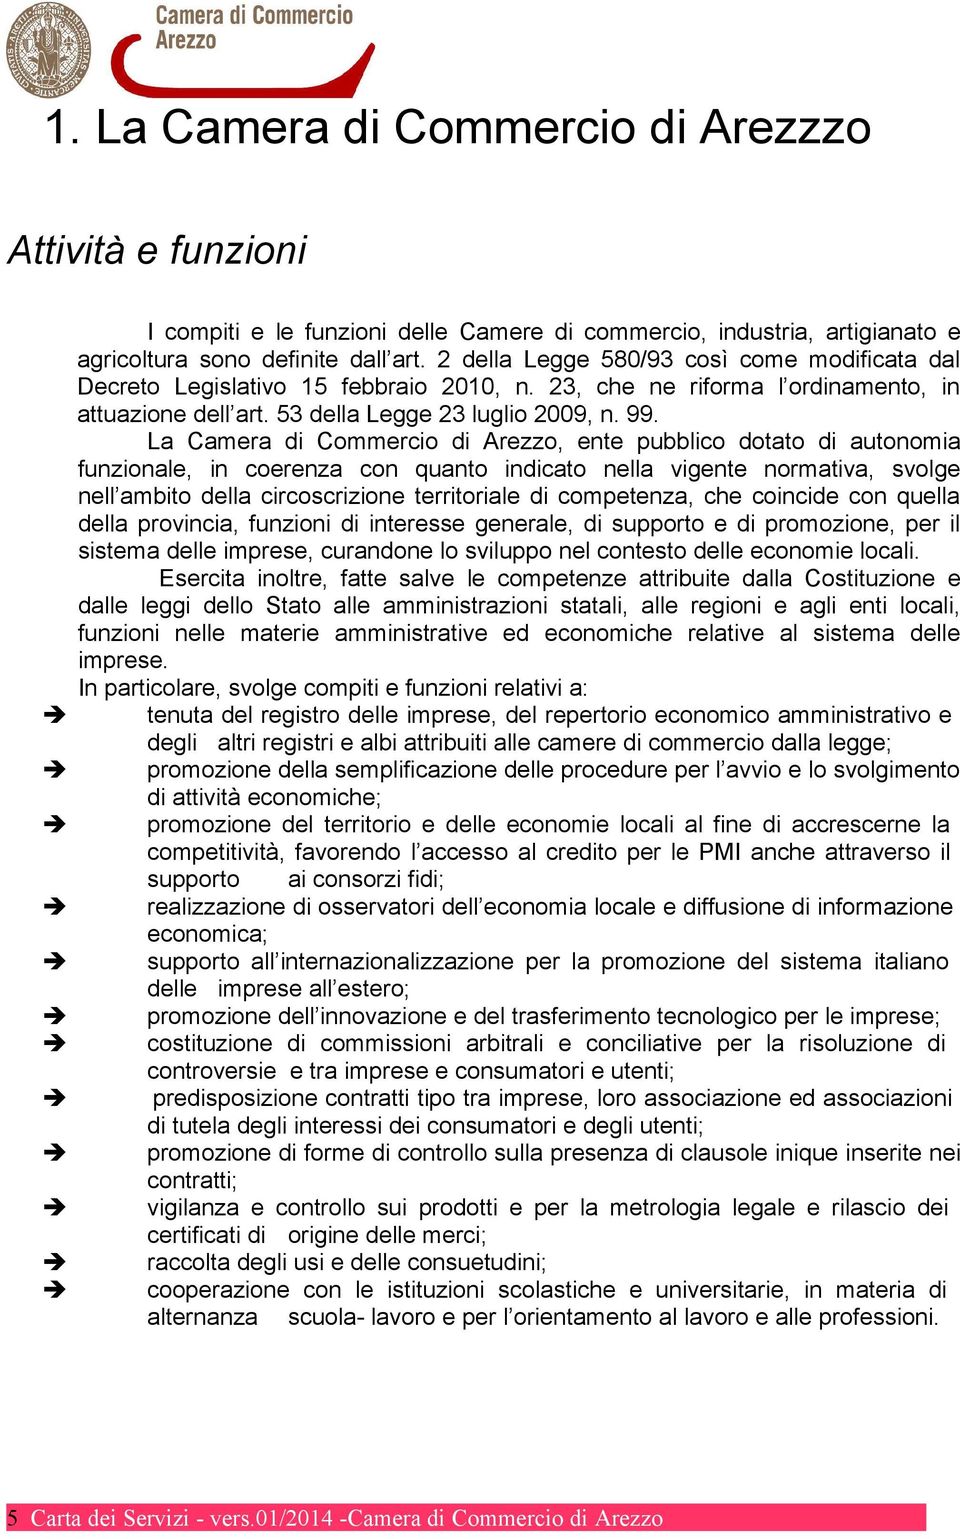 La Camera di Commercio di Arezzo, ente pubblico dotato di autonomia funzionale, in coerenza con quanto indicato nella vigente normativa, svolge nell ambito della circoscrizione territoriale di